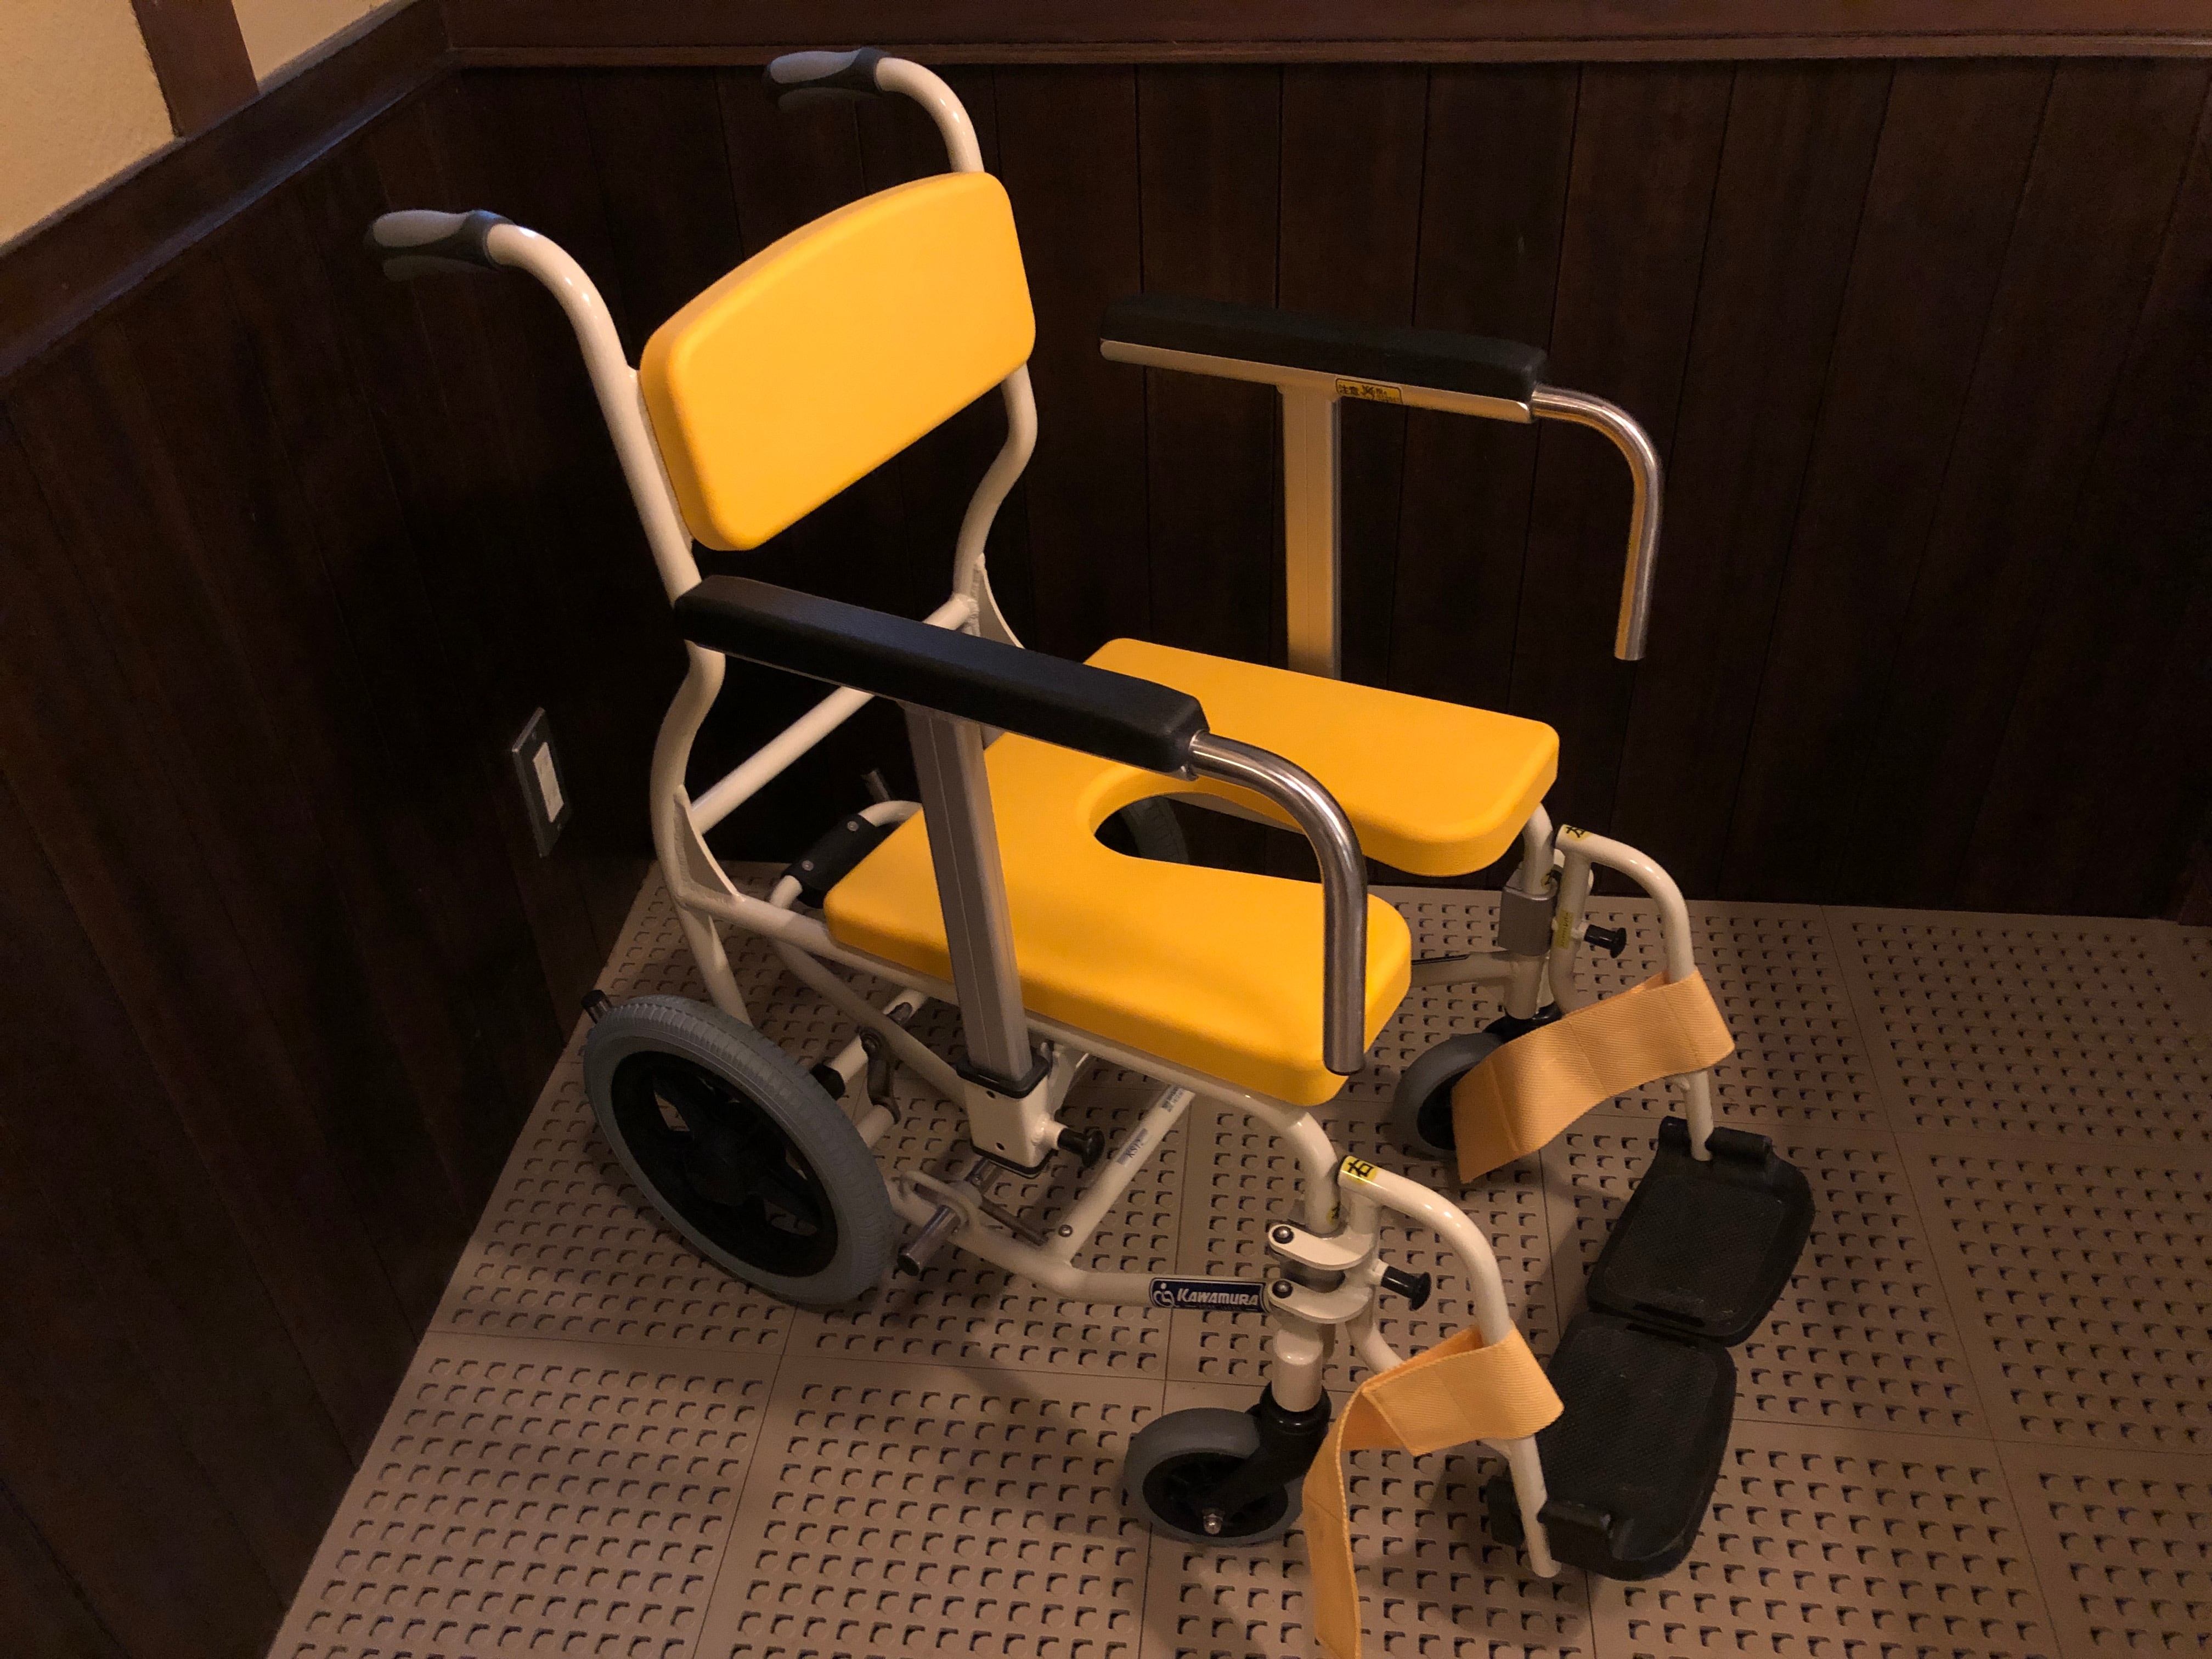 Wheelchair for bath